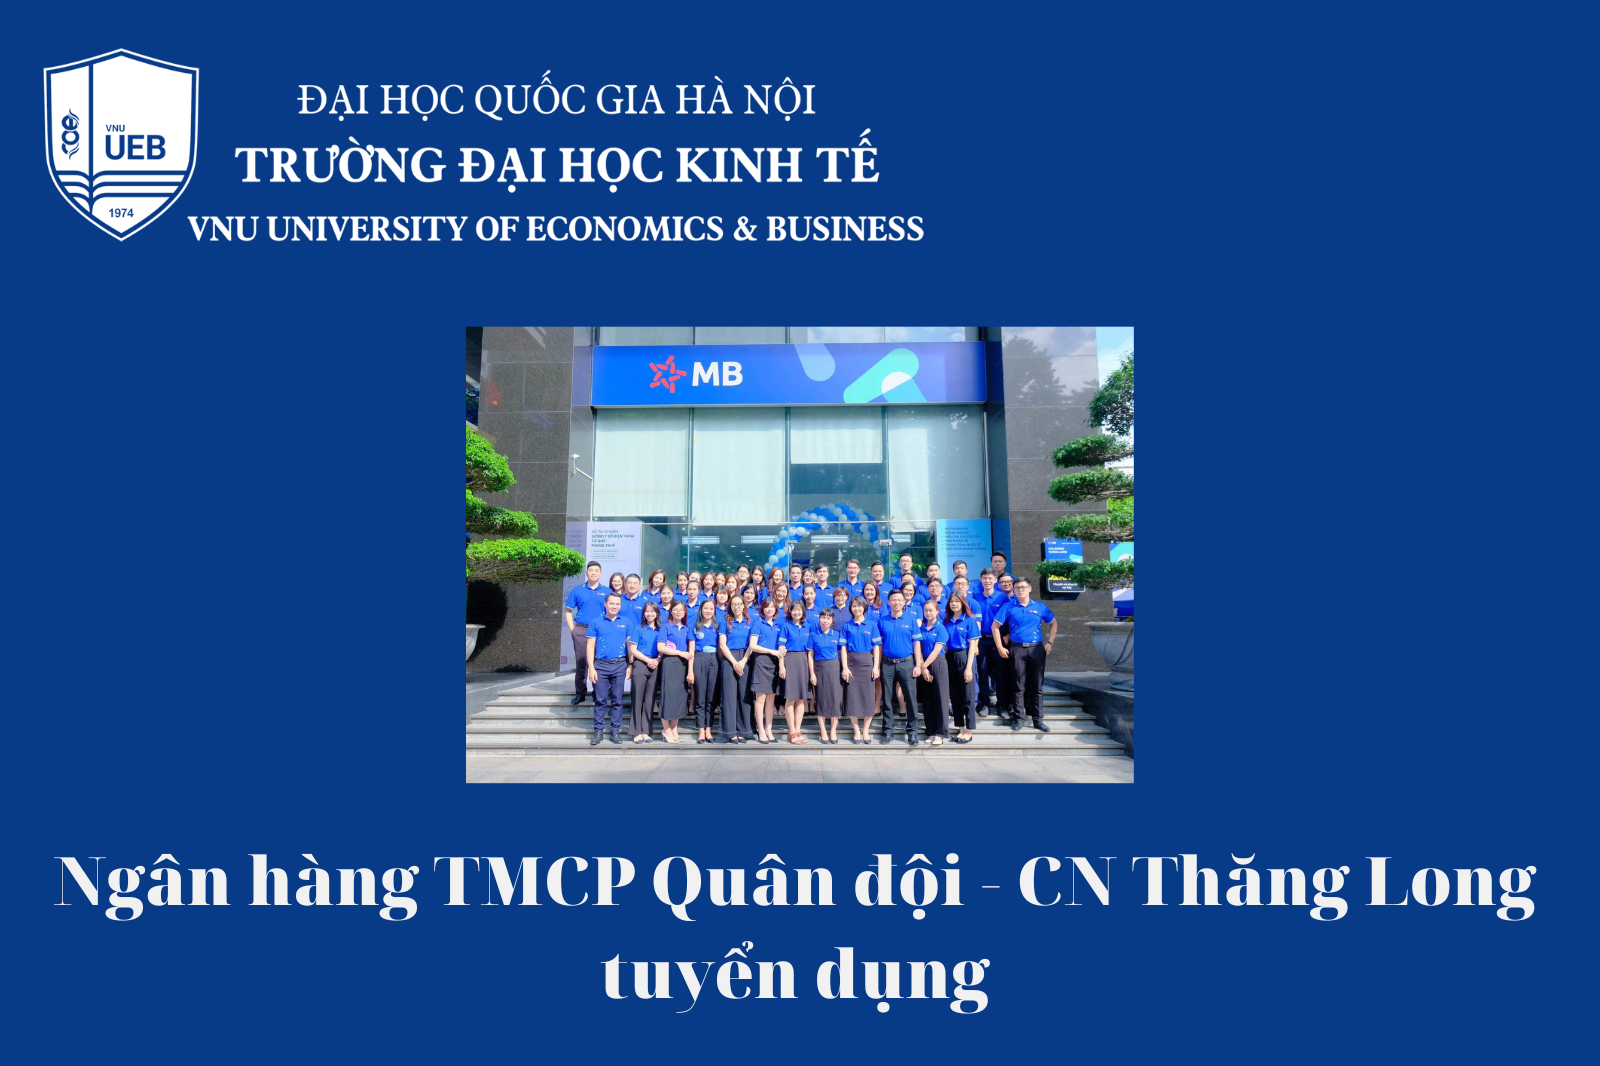 Ngân hàng TMCP Quân đội - CN Thăng Long tuyển dụng